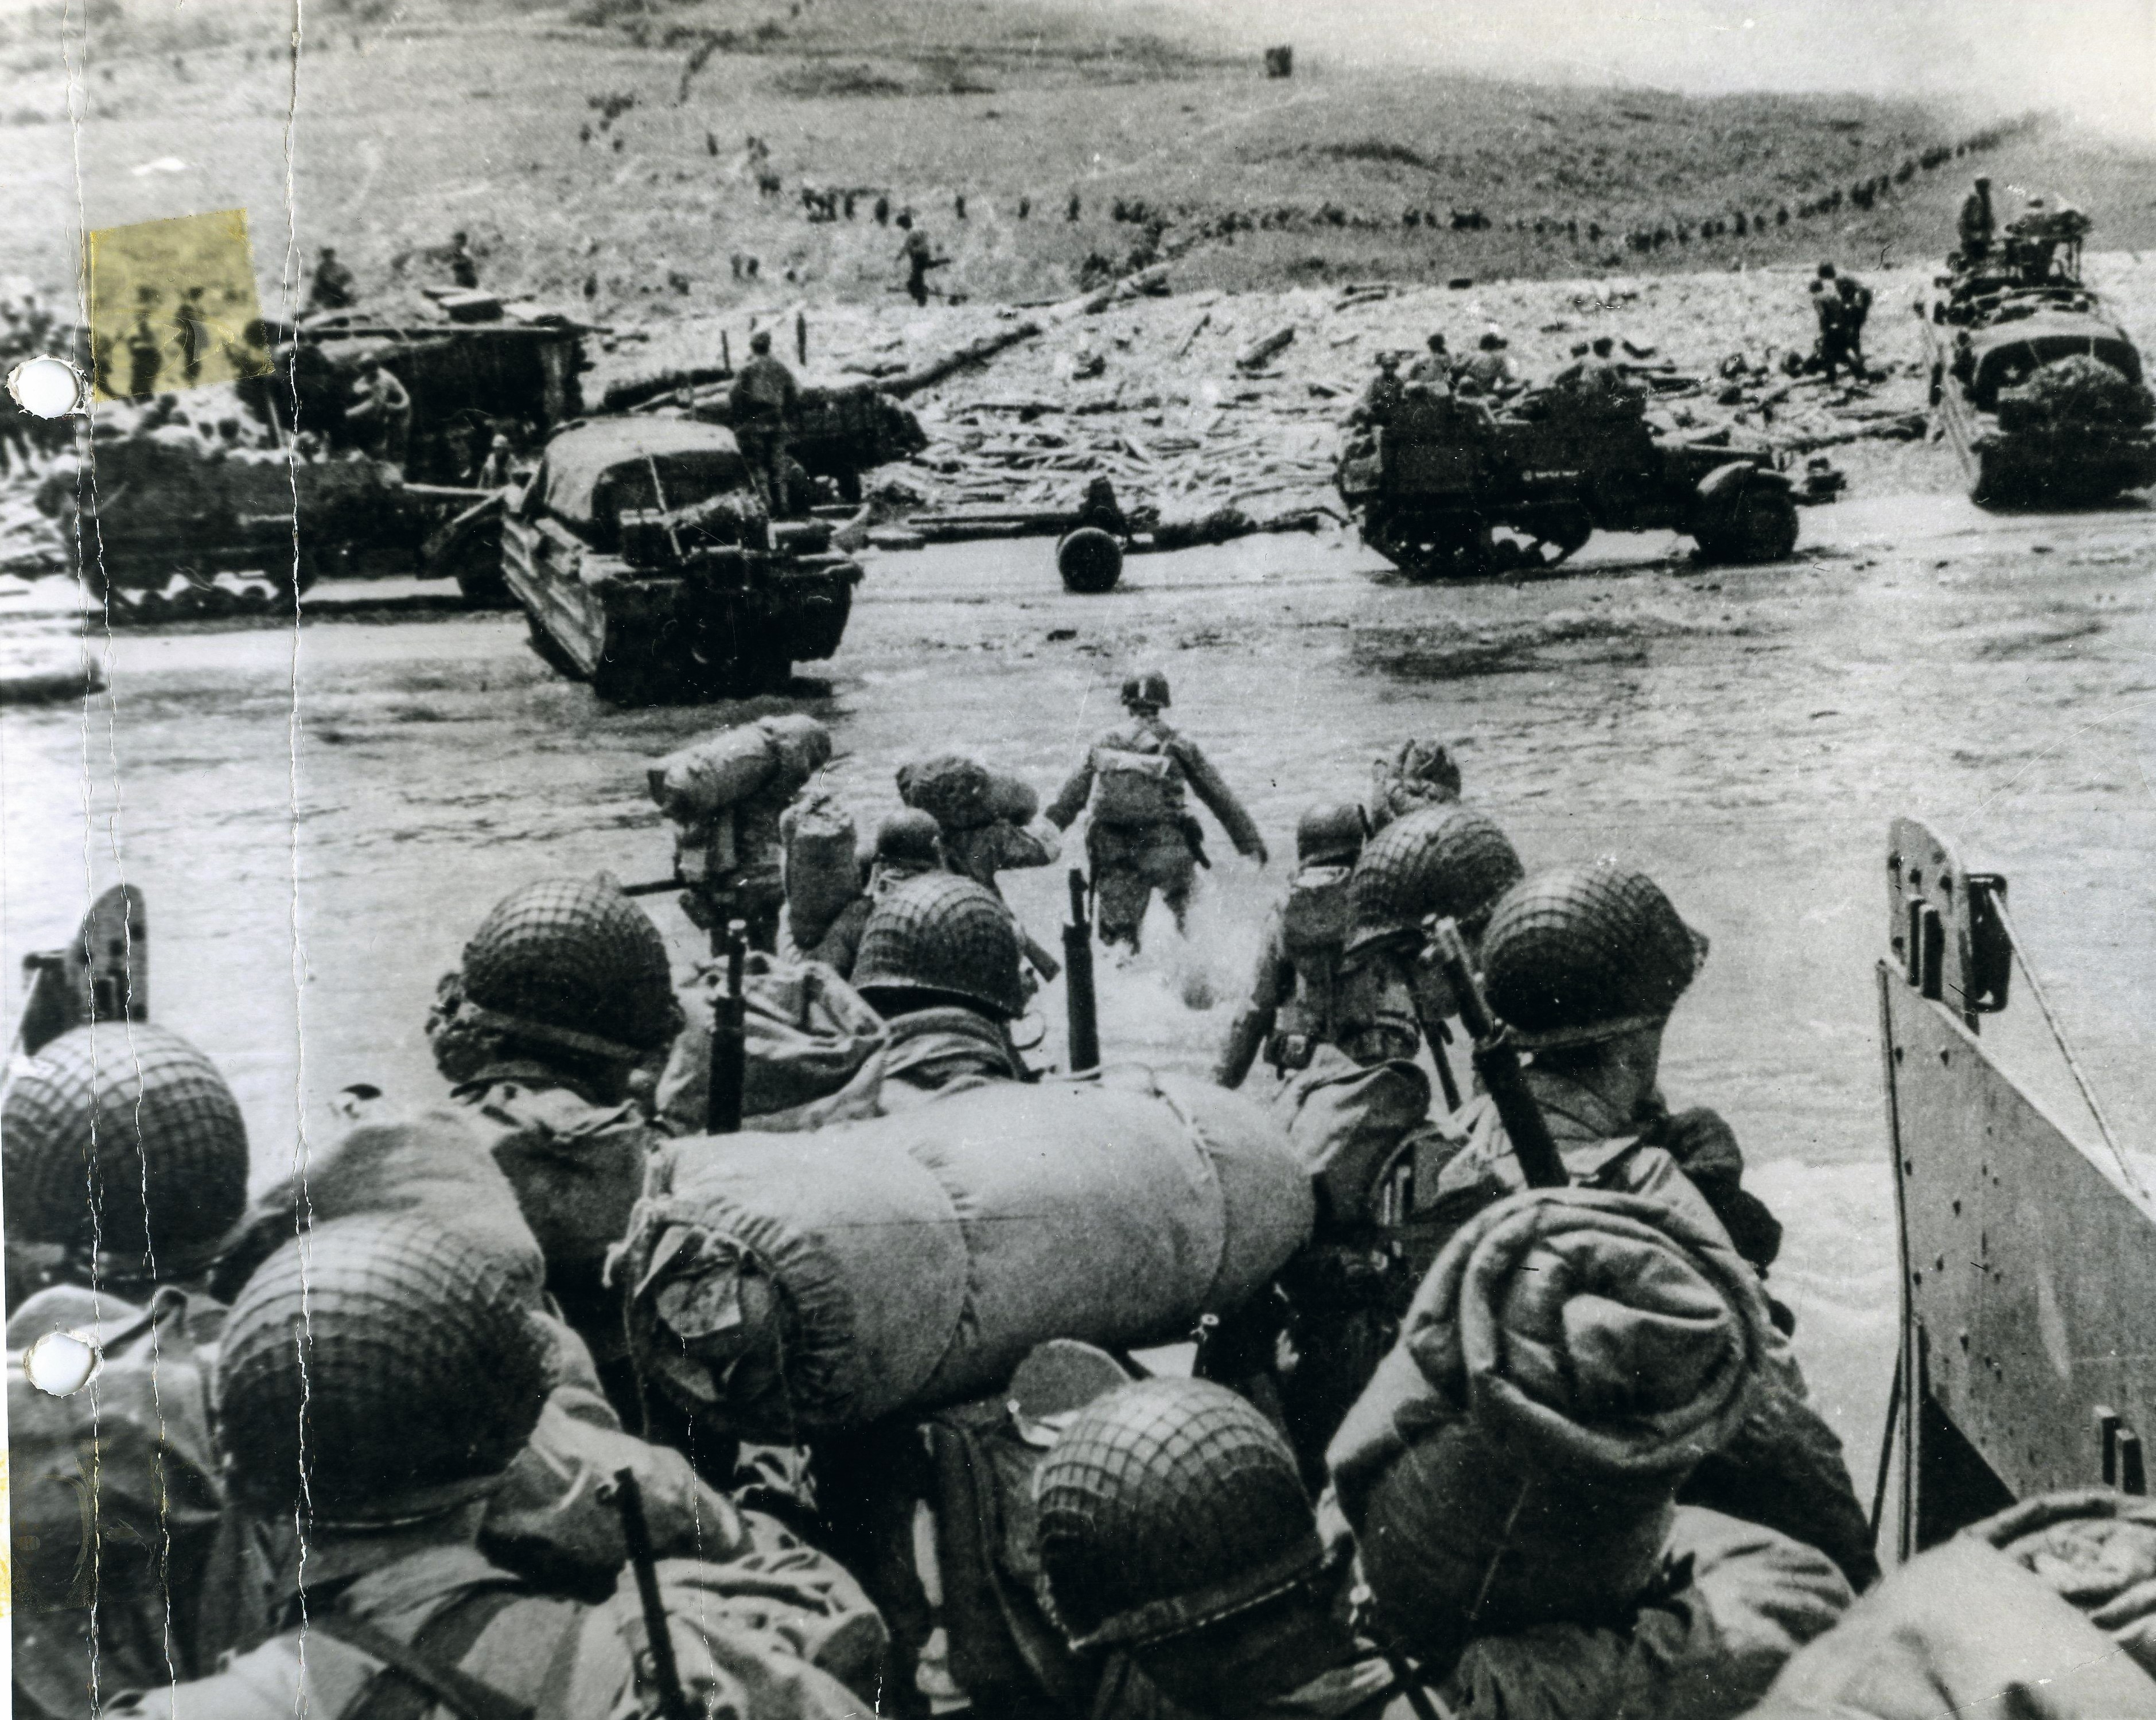 Le 6 juin 1944, 132 000 hommes débarquent sur cinq plages normandes. C’est le début de la Libération de la France. U.S. Army Signal Corps Photographs of Military Activity